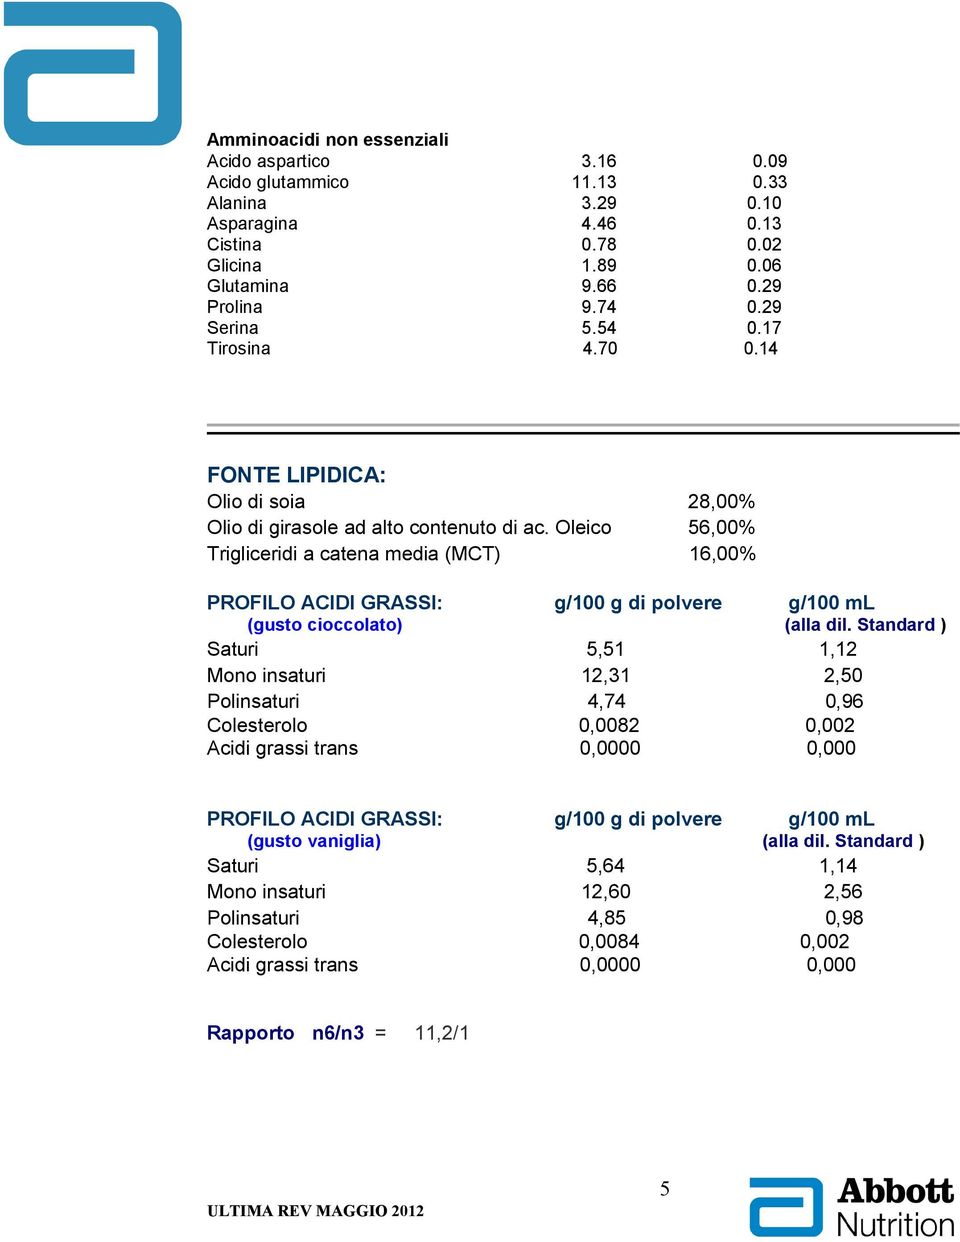 Oleico 56,00% Trigliceridi a catena media (MCT) 16,00% PROFILO ACIDI GRASSI: g/100 g di polvere g/100 ml (gusto cioccolato) (alla dil.